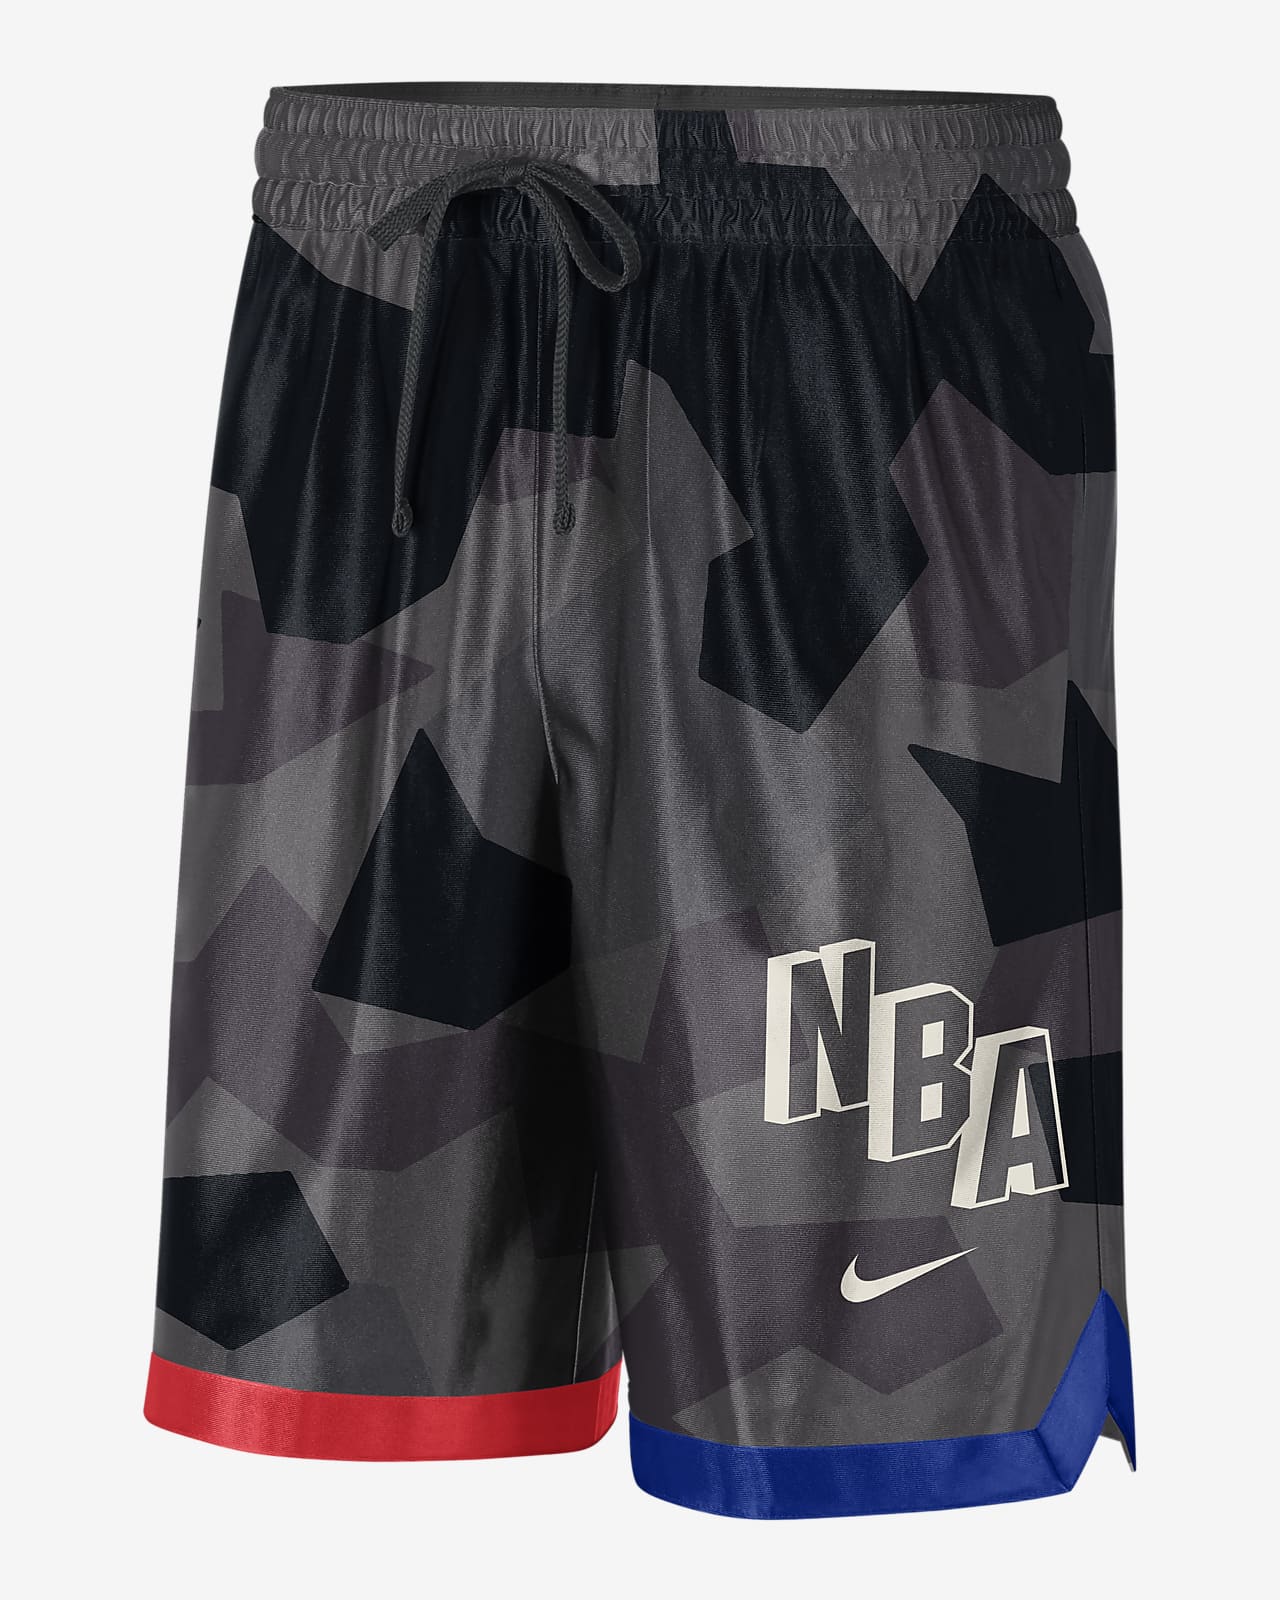 Team 31 Courtside Men's Nike Dri-FIT NBA Shorts